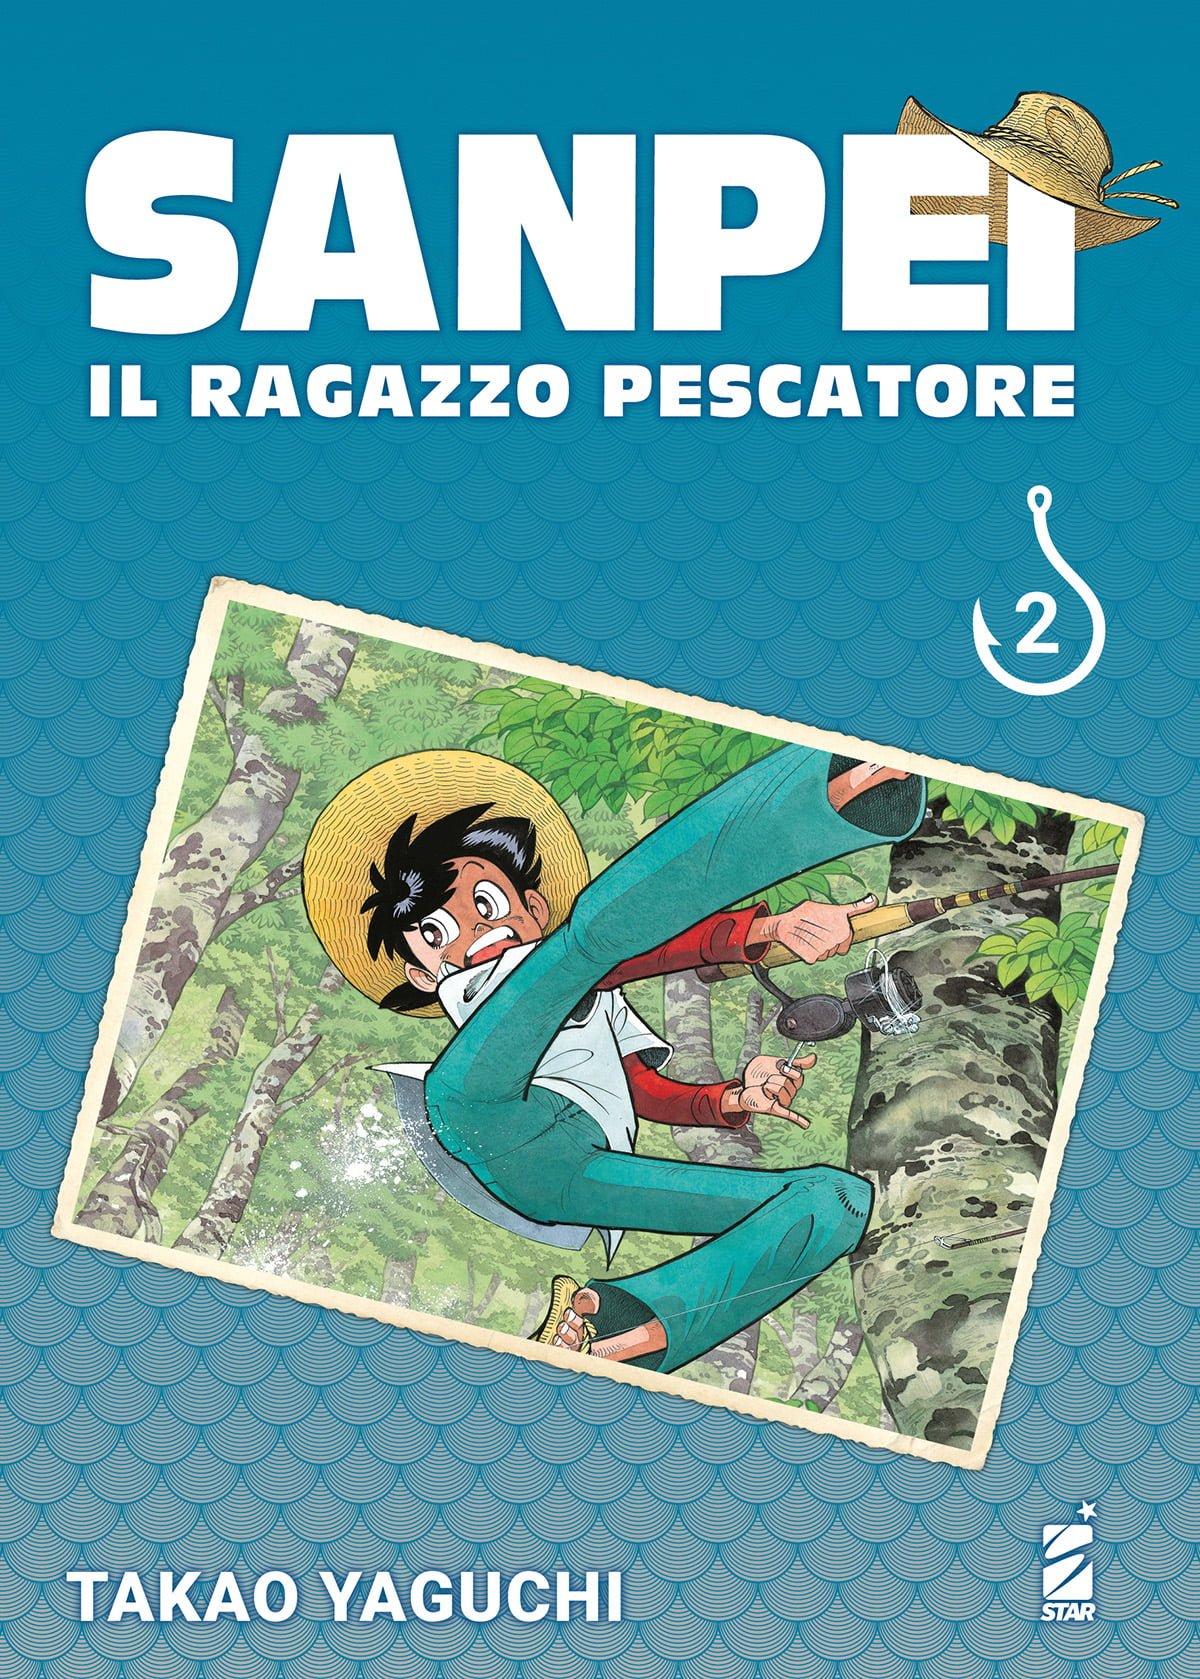 SANPEI IL RAGAZZO PESCATORE TRIBUTE EDITION 2 DI 12